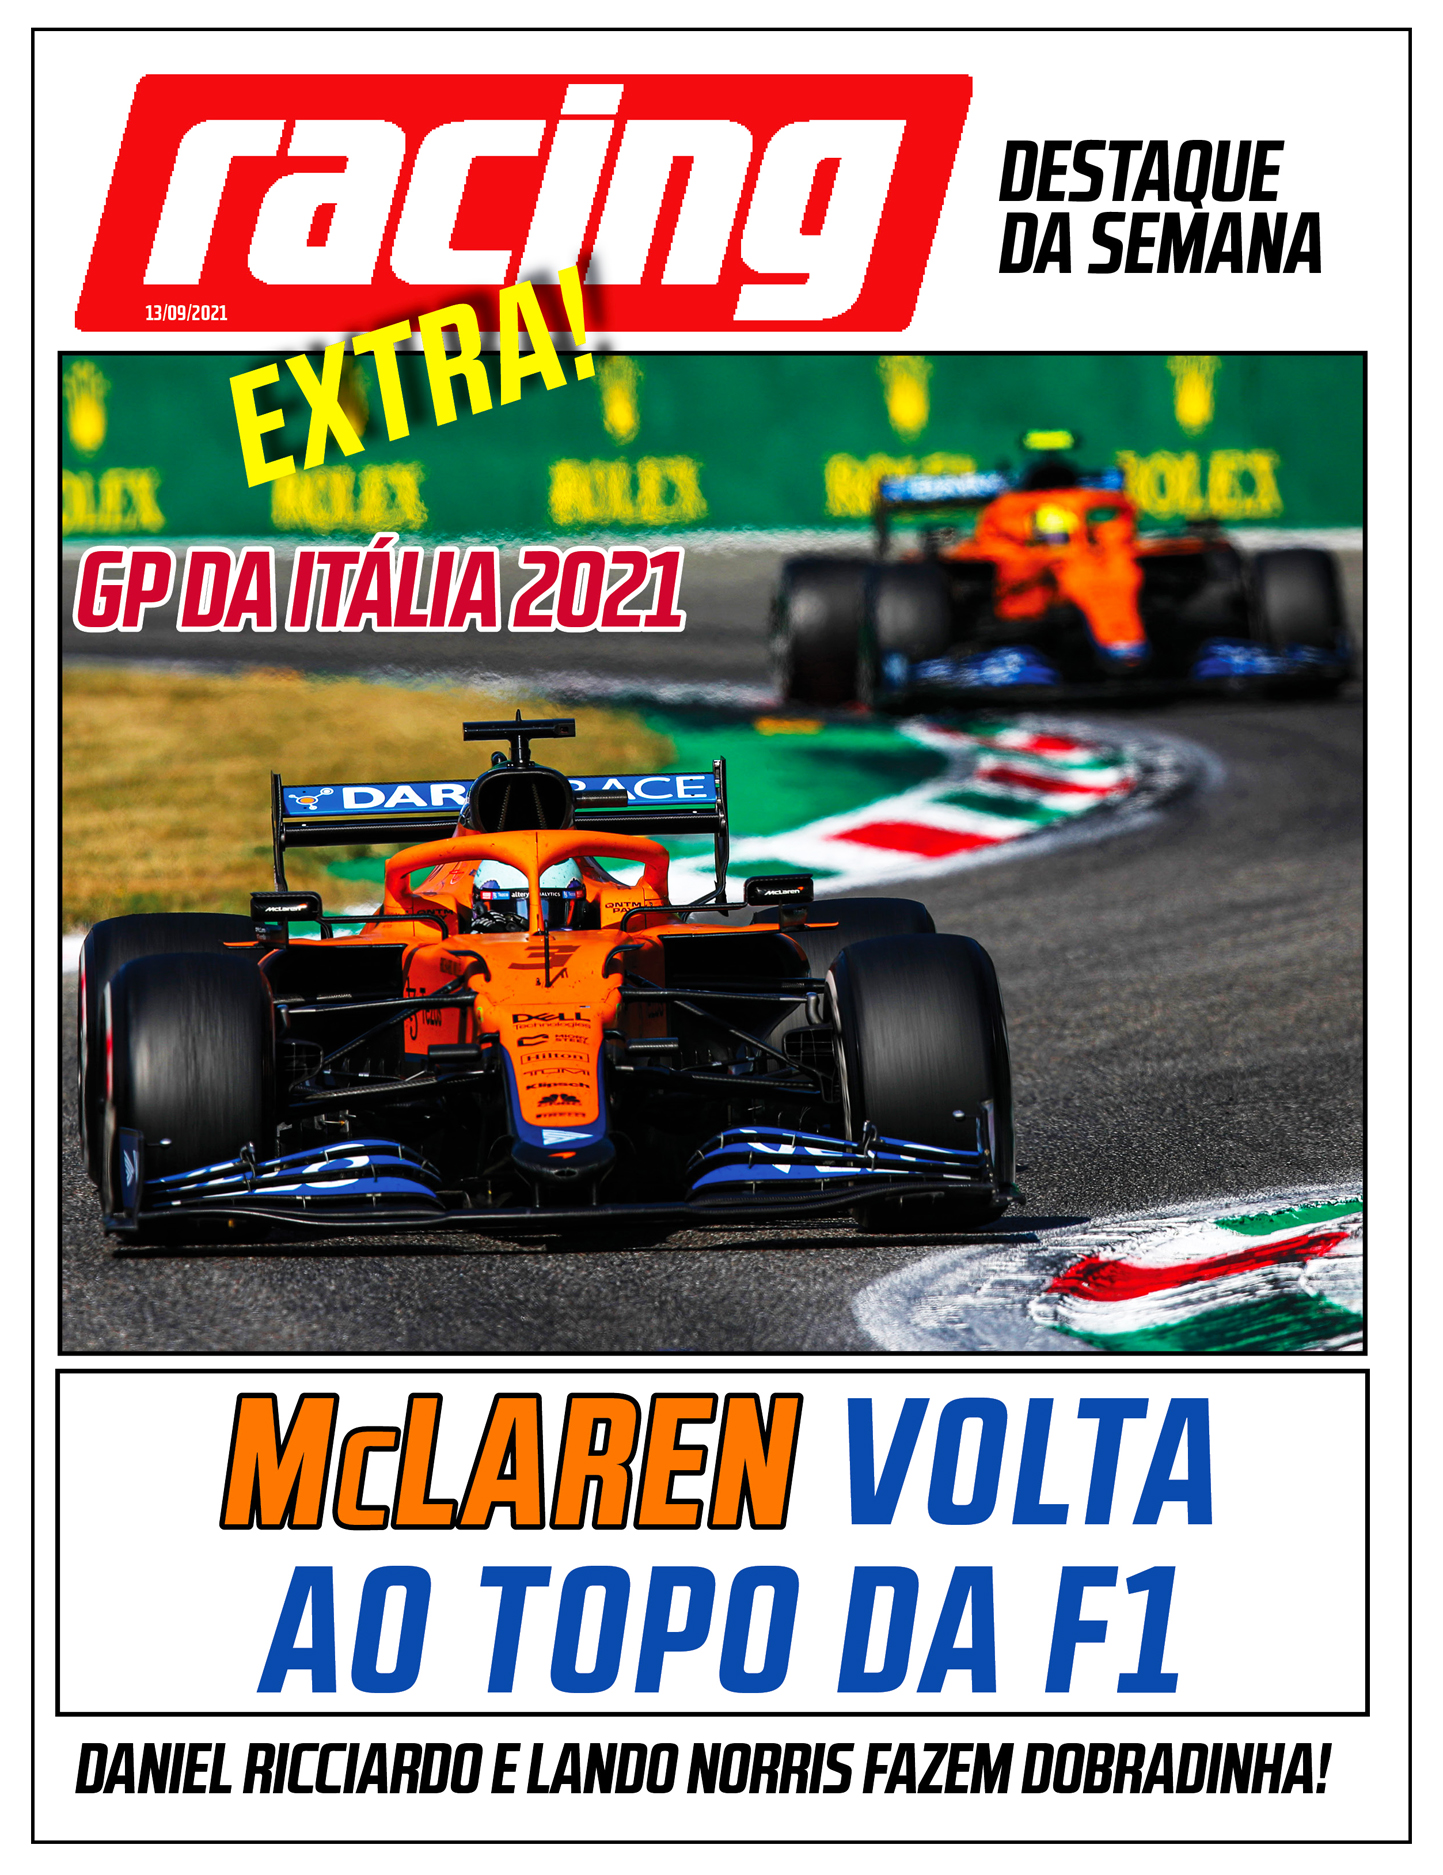 McLaren volta ao topo da F1